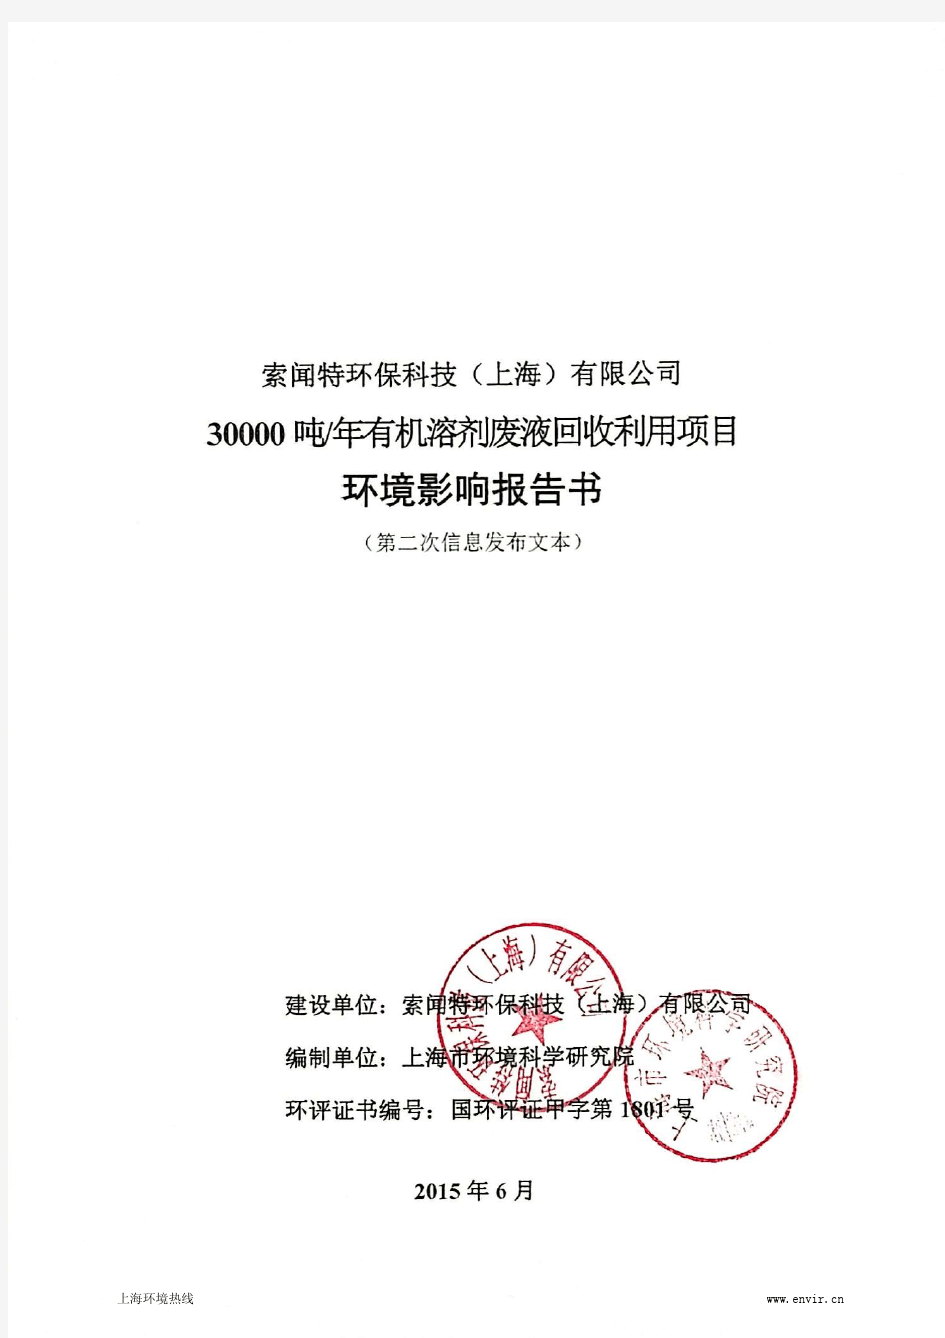 上海市环境科学研究院受索闻特环保科技(上海)有限公司